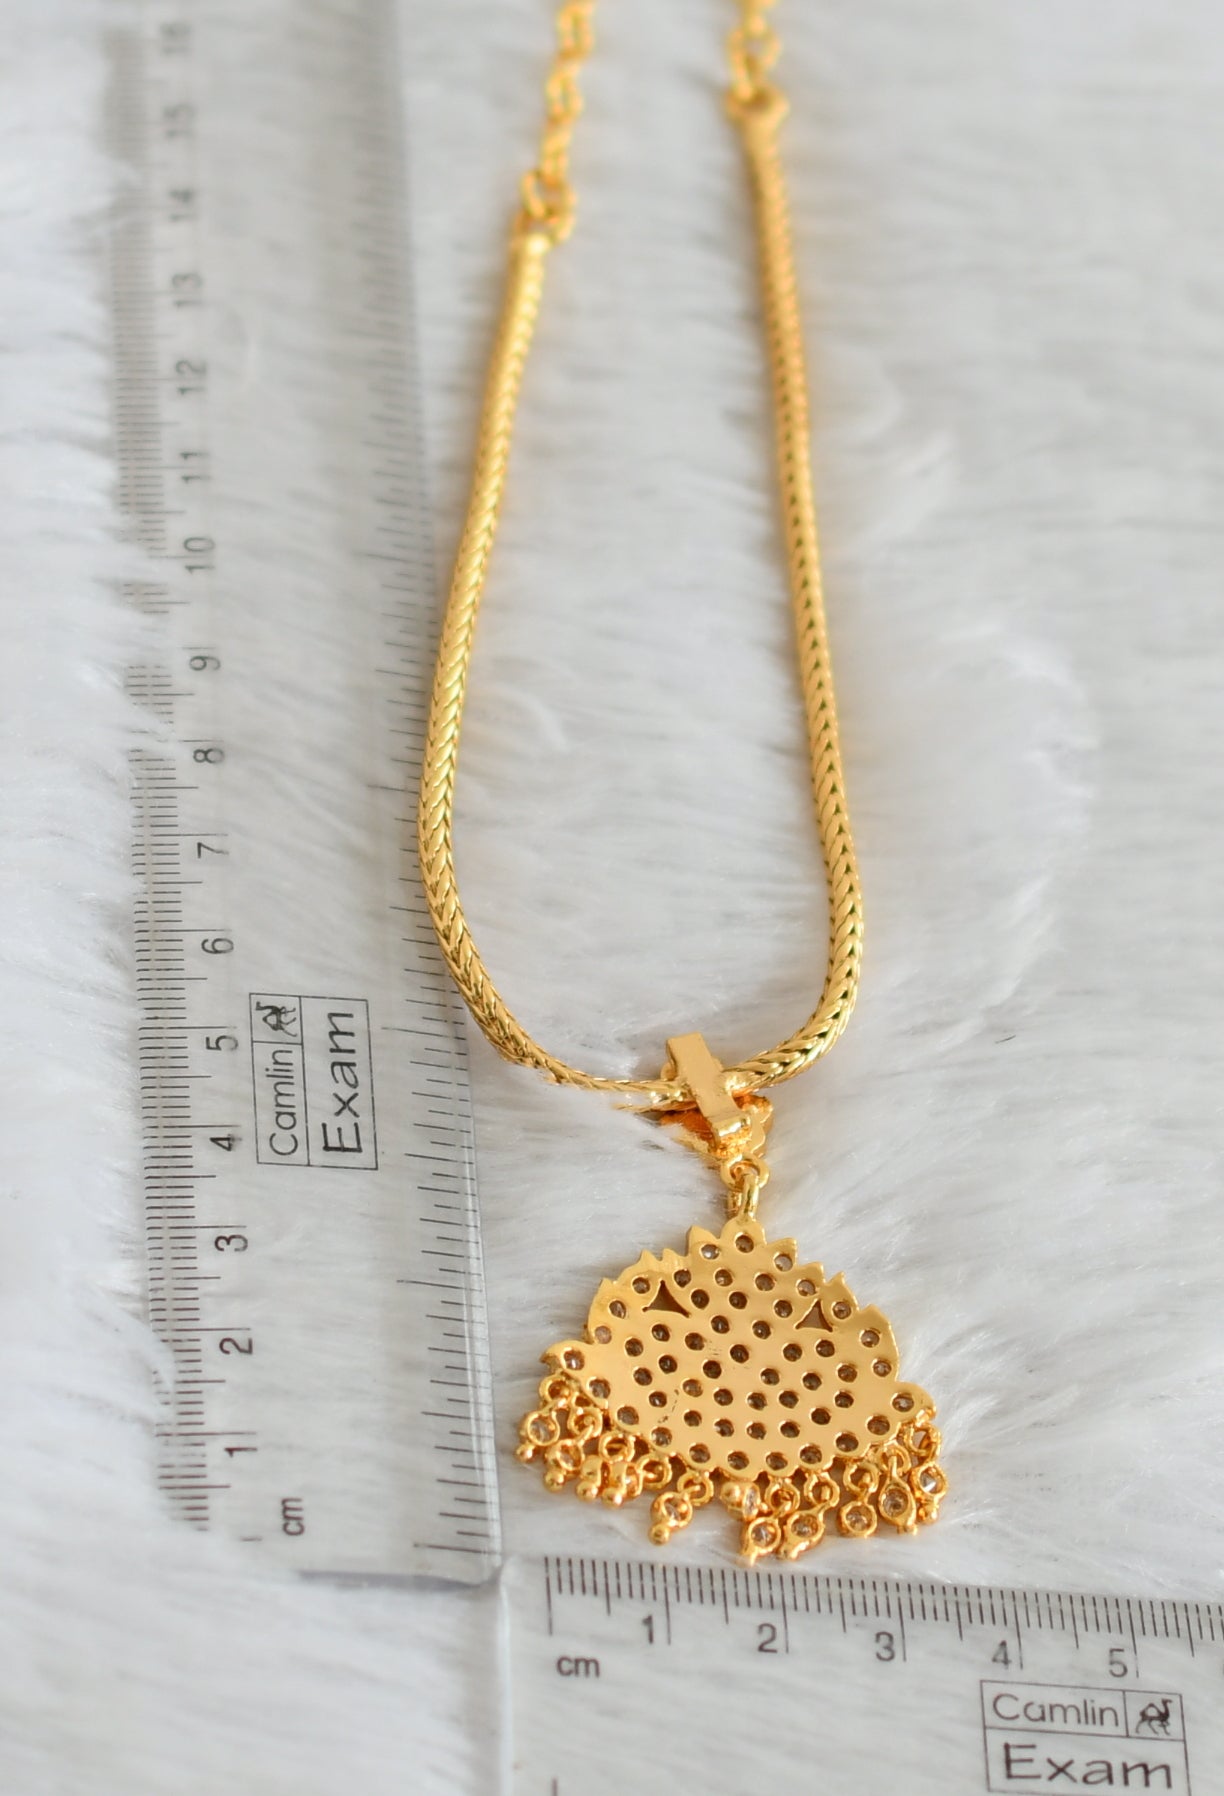 Gold tone AD white stone kodi chain necklace dj-47645